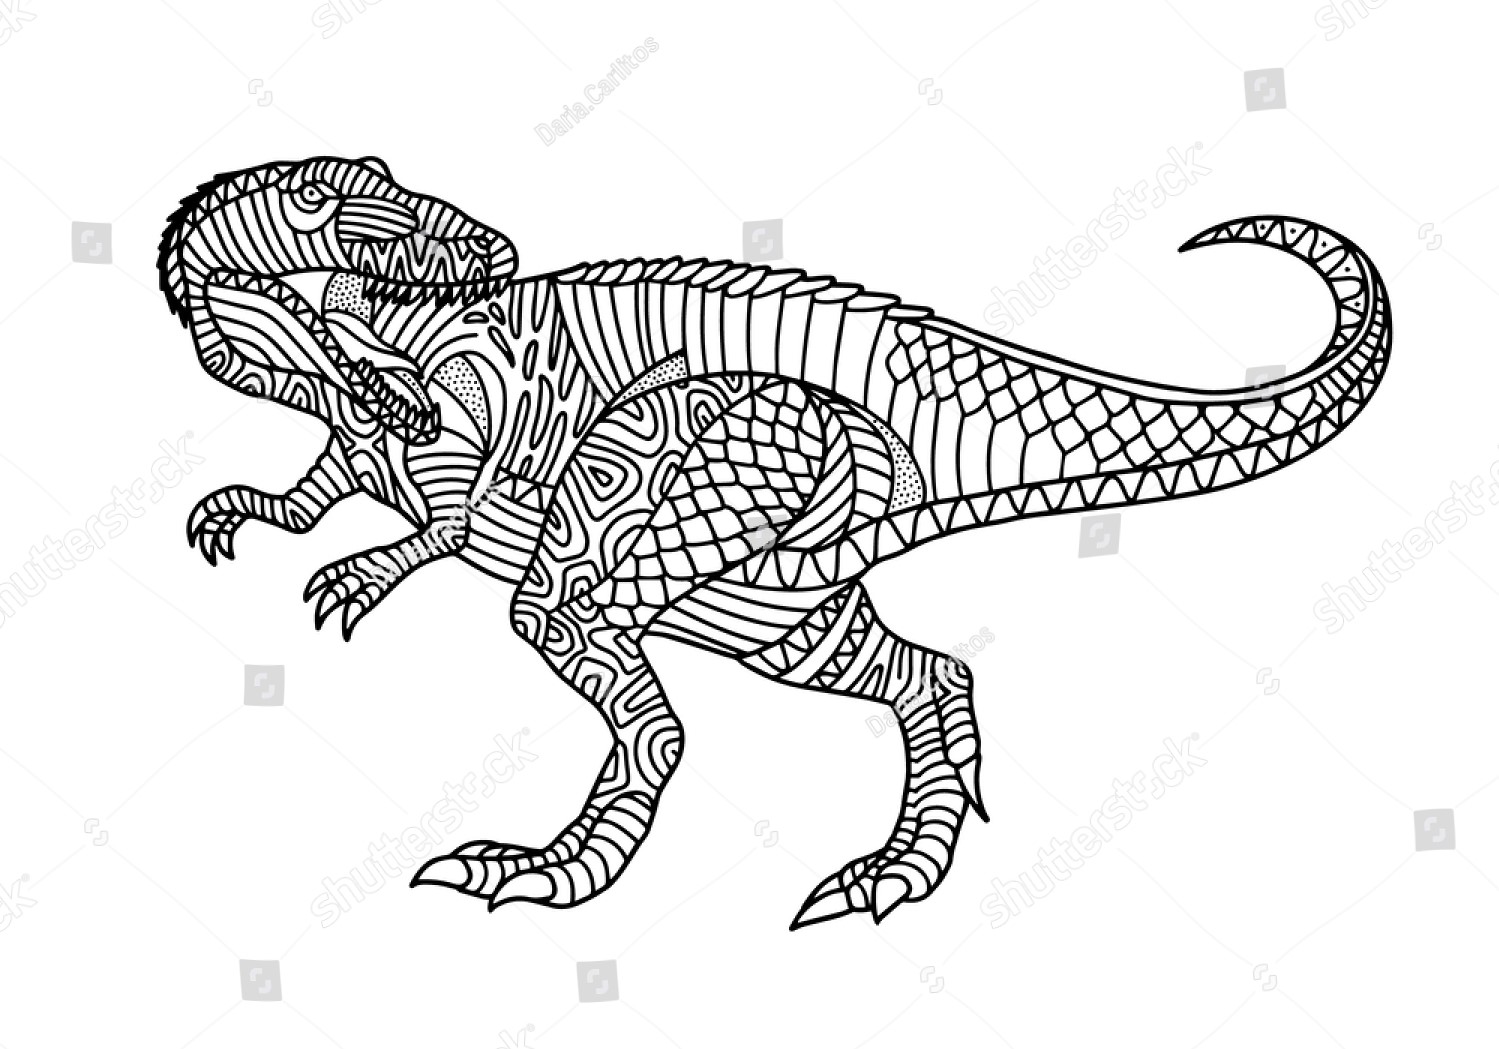 Allosaurus Details van Allosaurus